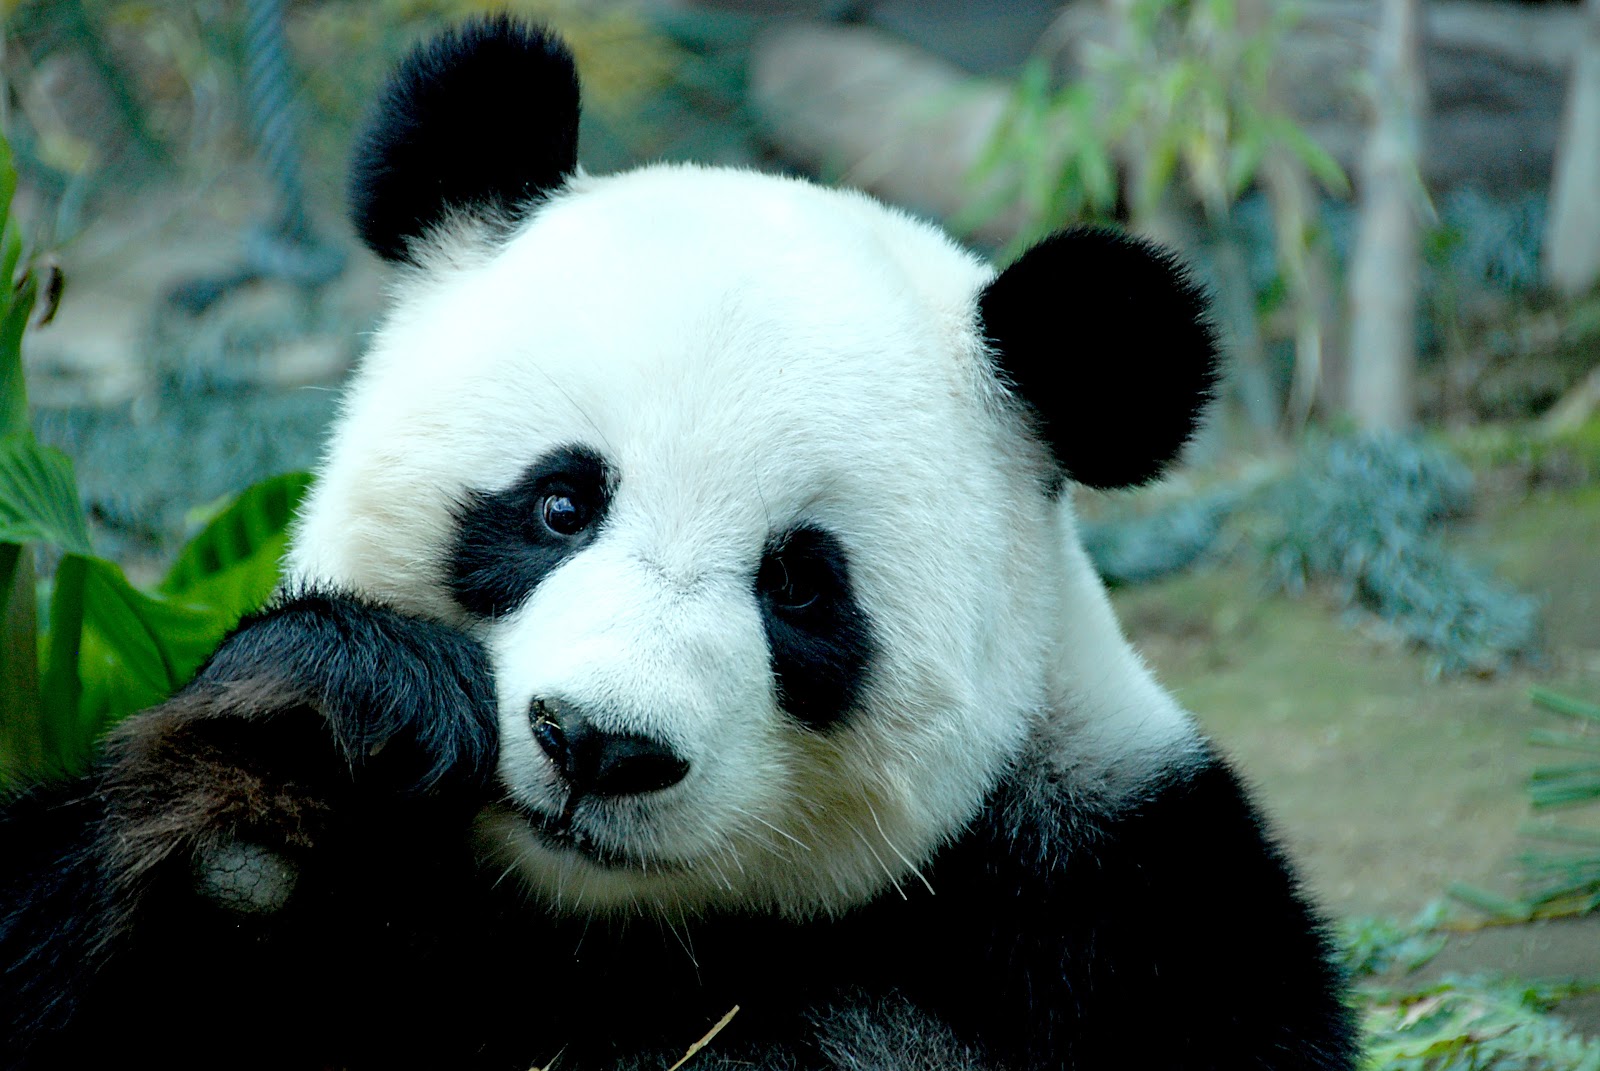  gambar Gambar Panda Lucu Lengkap